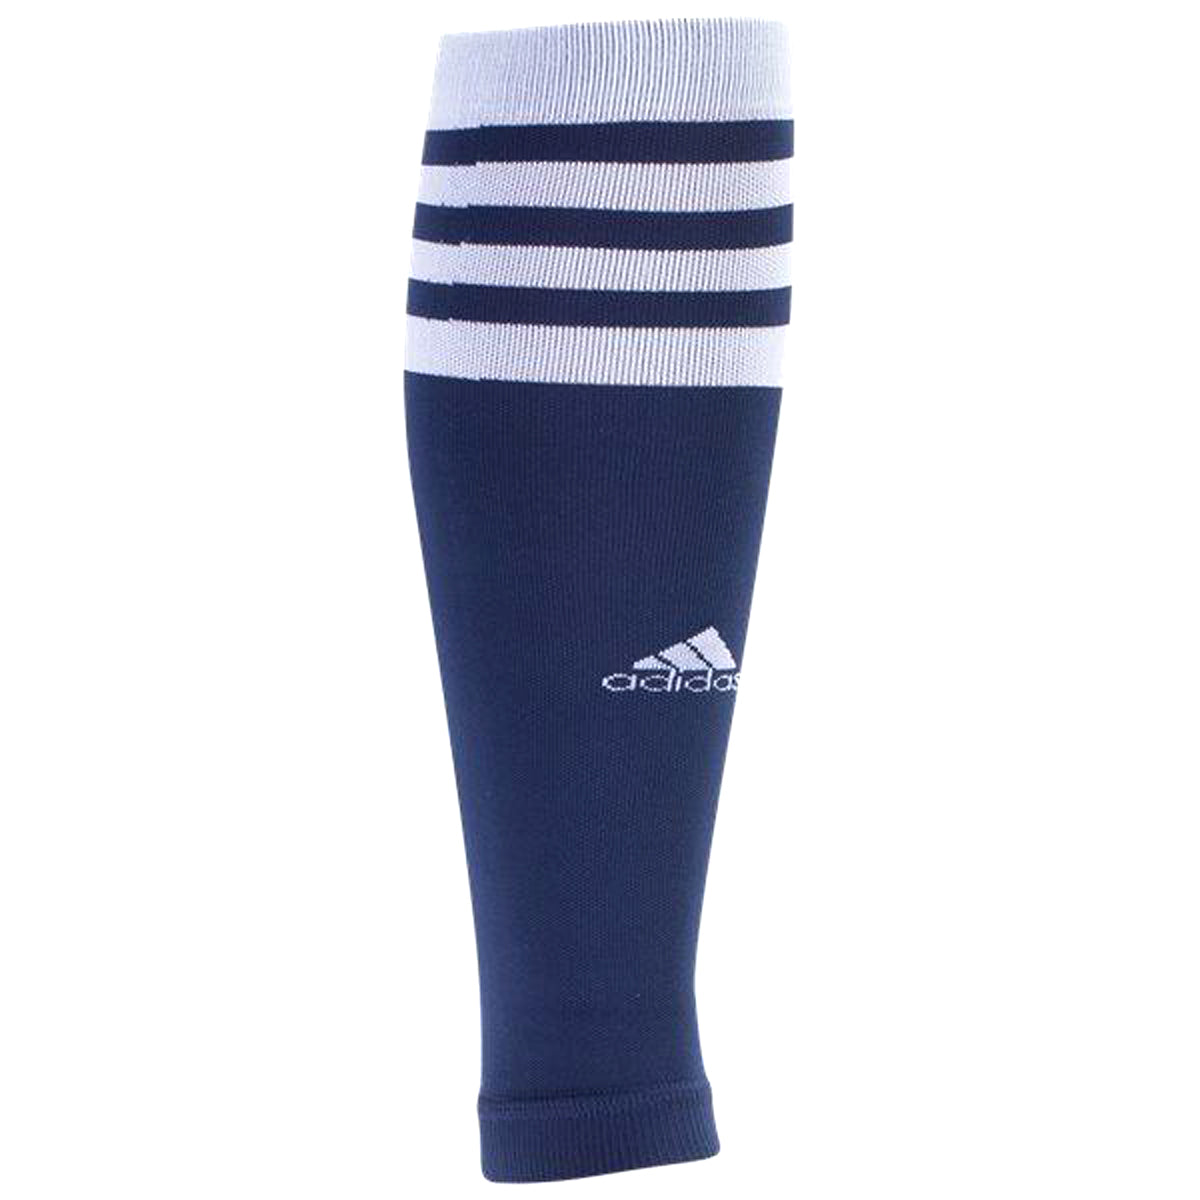 https://goalkicksoccer.com/cdn/shop/products/adidas-team-speed-sock-system-calf-sleeve-1-pair-socks-adidas-navy-789528.jpg?v=1656495748